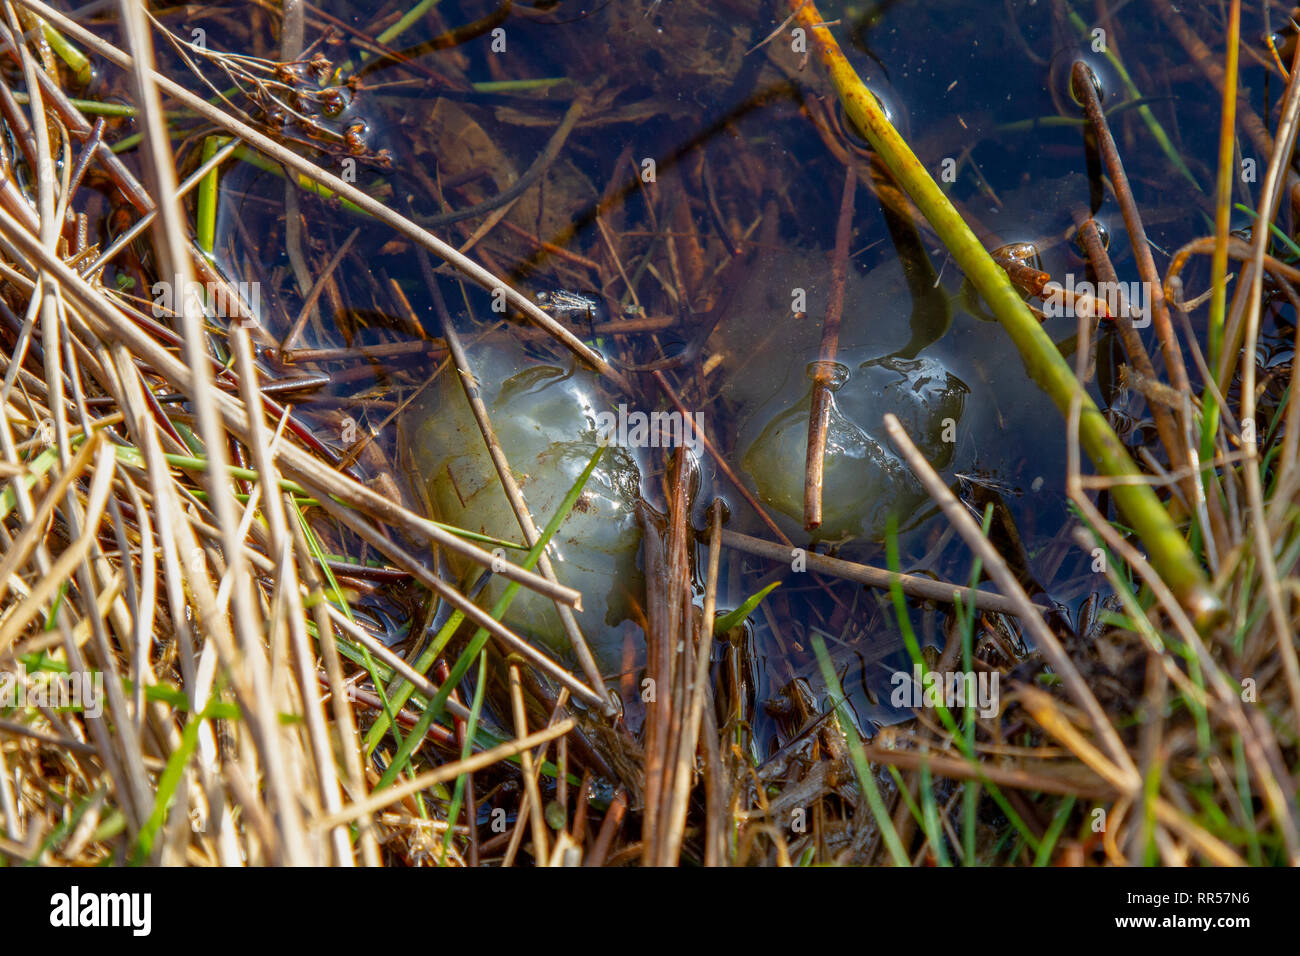 Inizio frog spawn in stagno nel tardo inverno Foto Stock